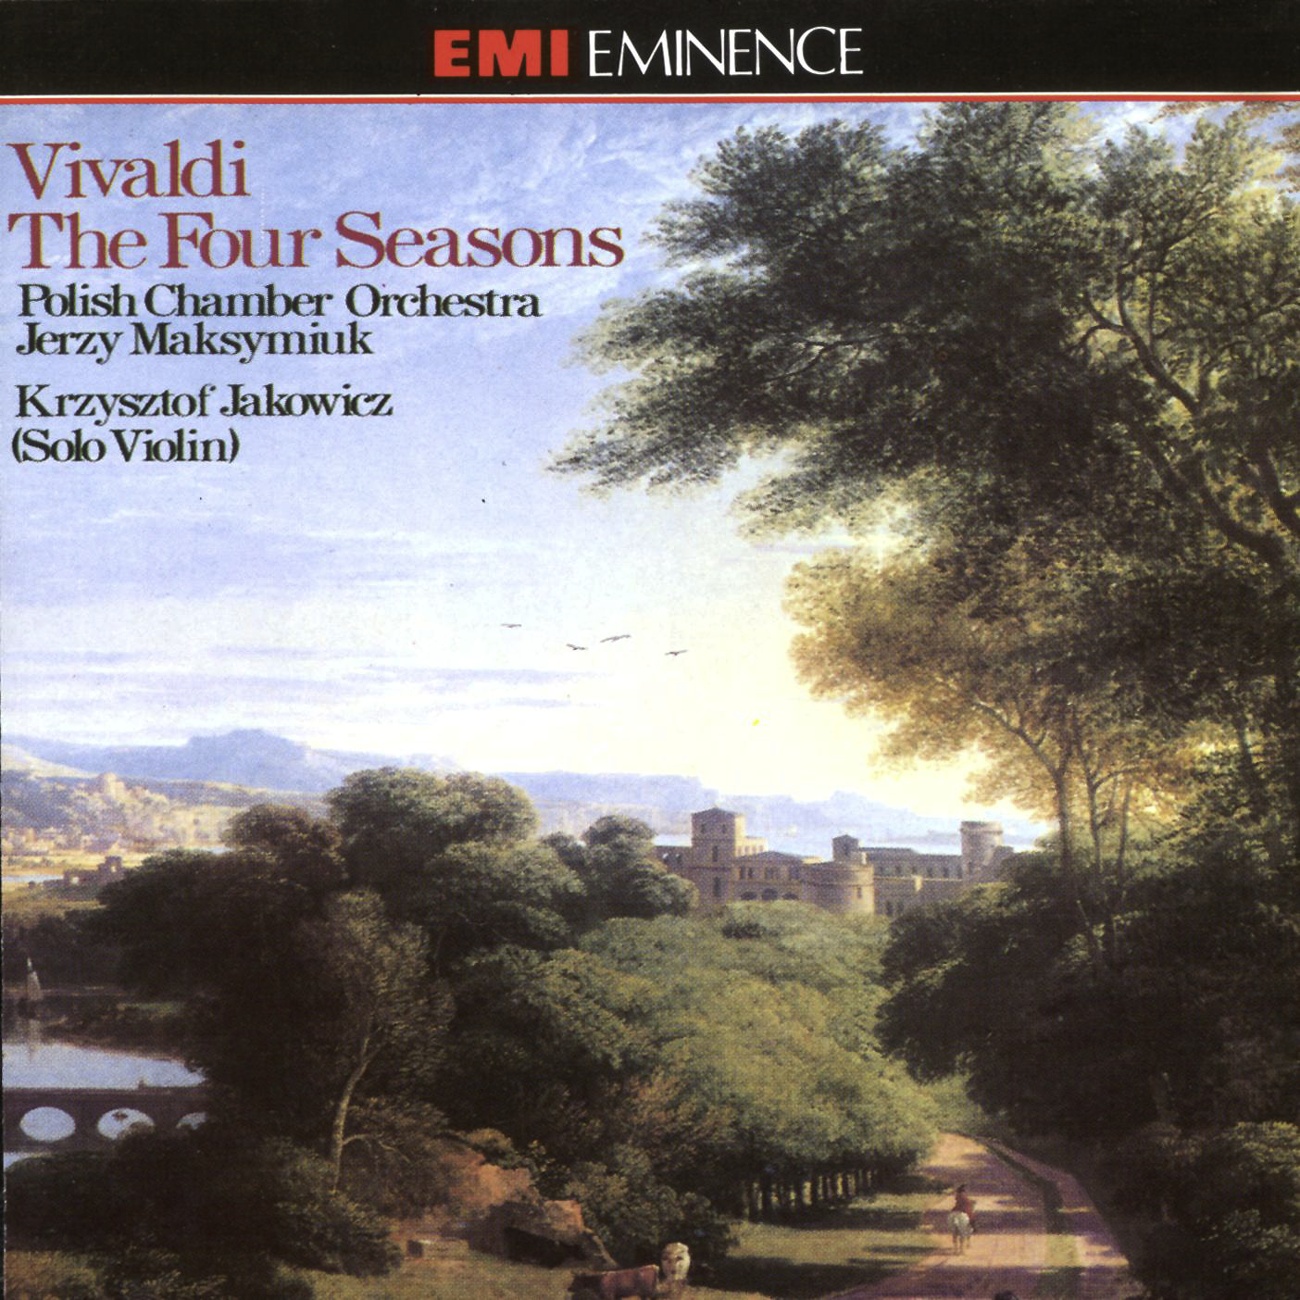 The Four Seasons Op. 8 Nos. 1-4 (1990 Digital Remaster), Concerto No. 1 in E (La primavera/ Spring) RV269 (Op. 8 No. 1): III. Al